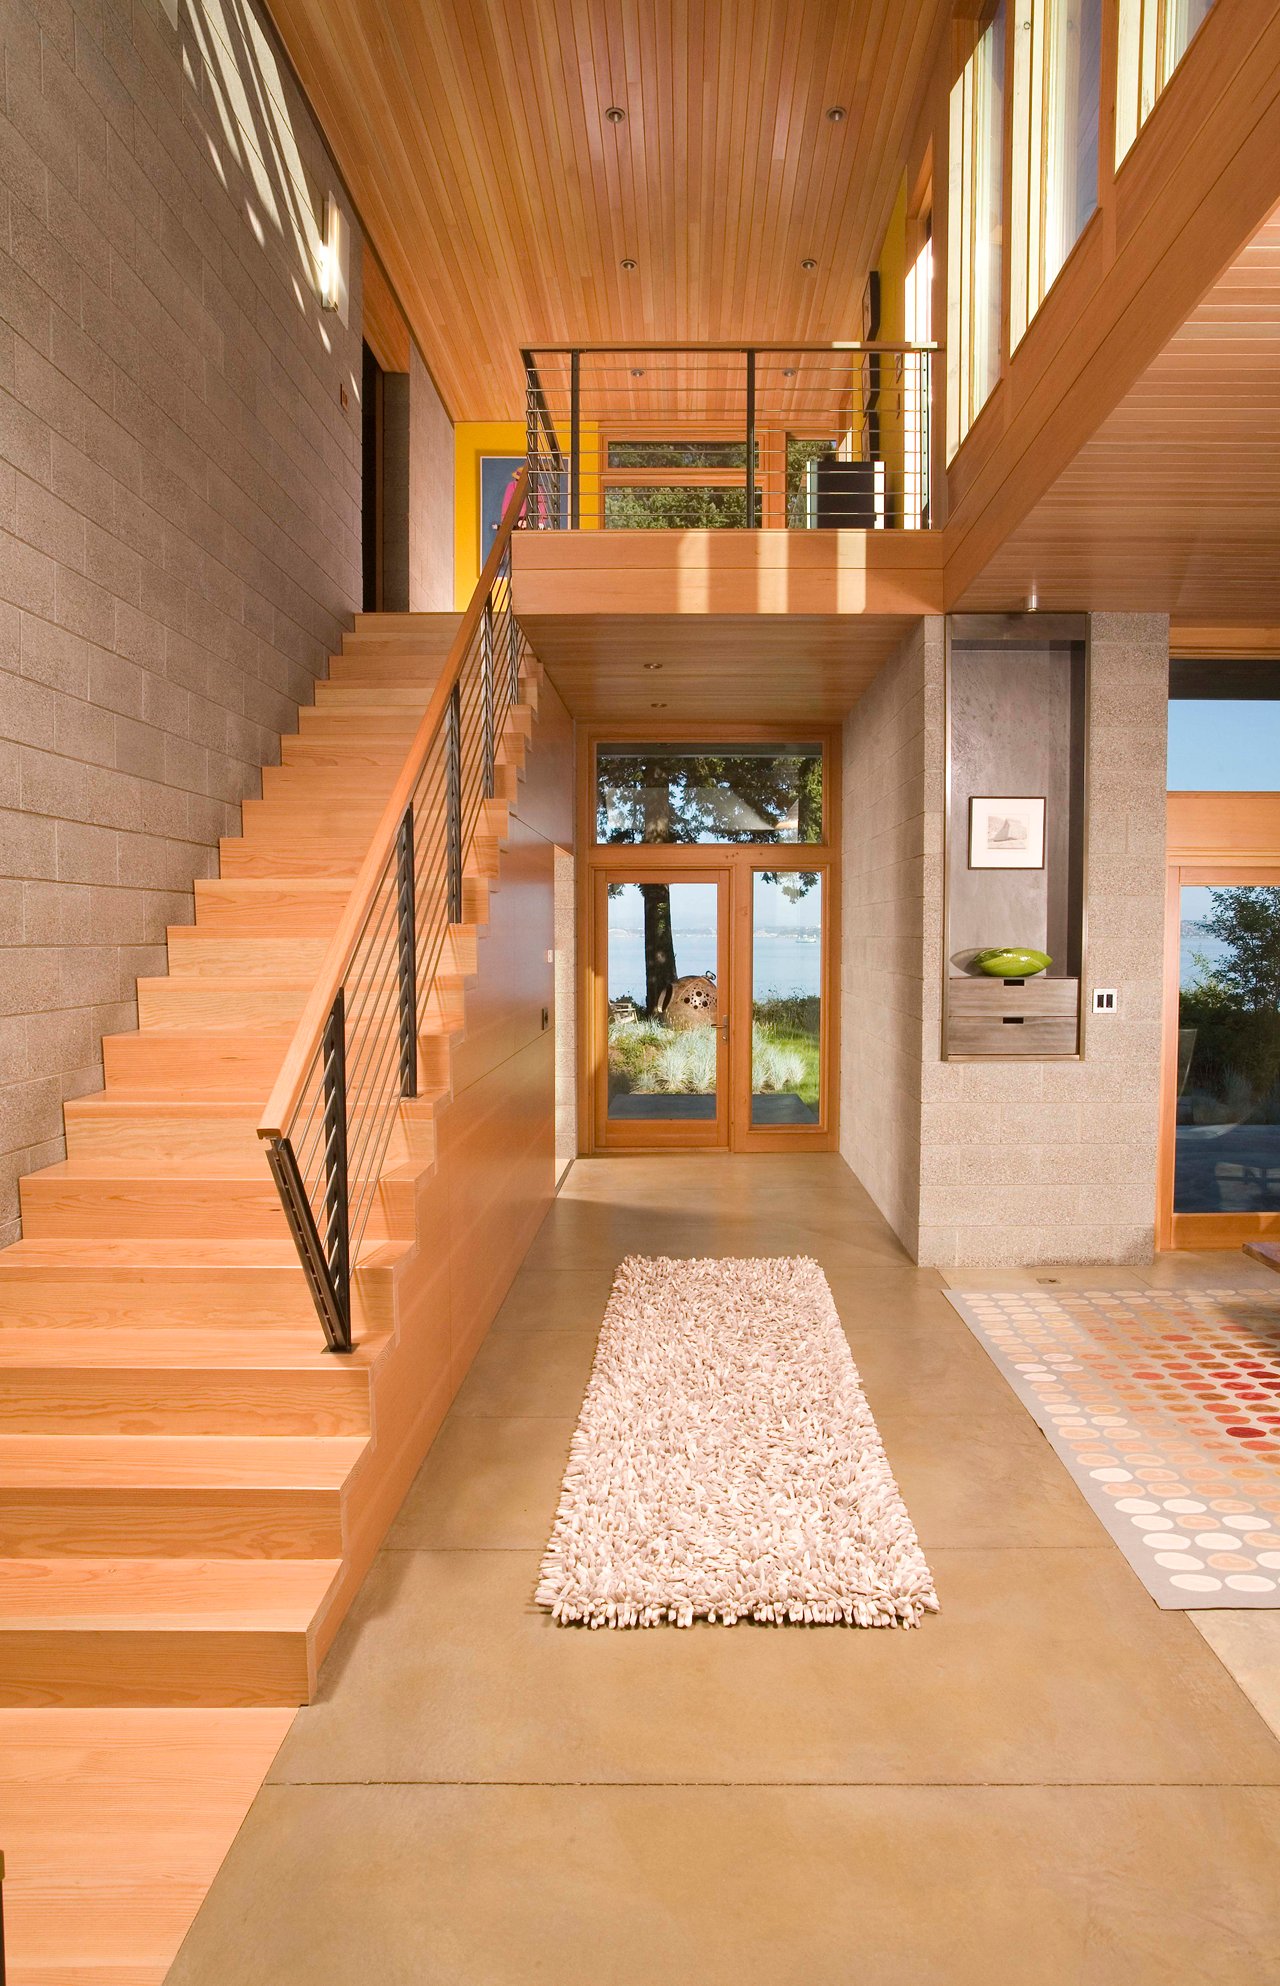 这个可爱的,温暖的入口通道主要生活区域向右,左边的楼梯,和短期走廊直走通向后院。入口是一个温暖的木材和中立的瓷砖。